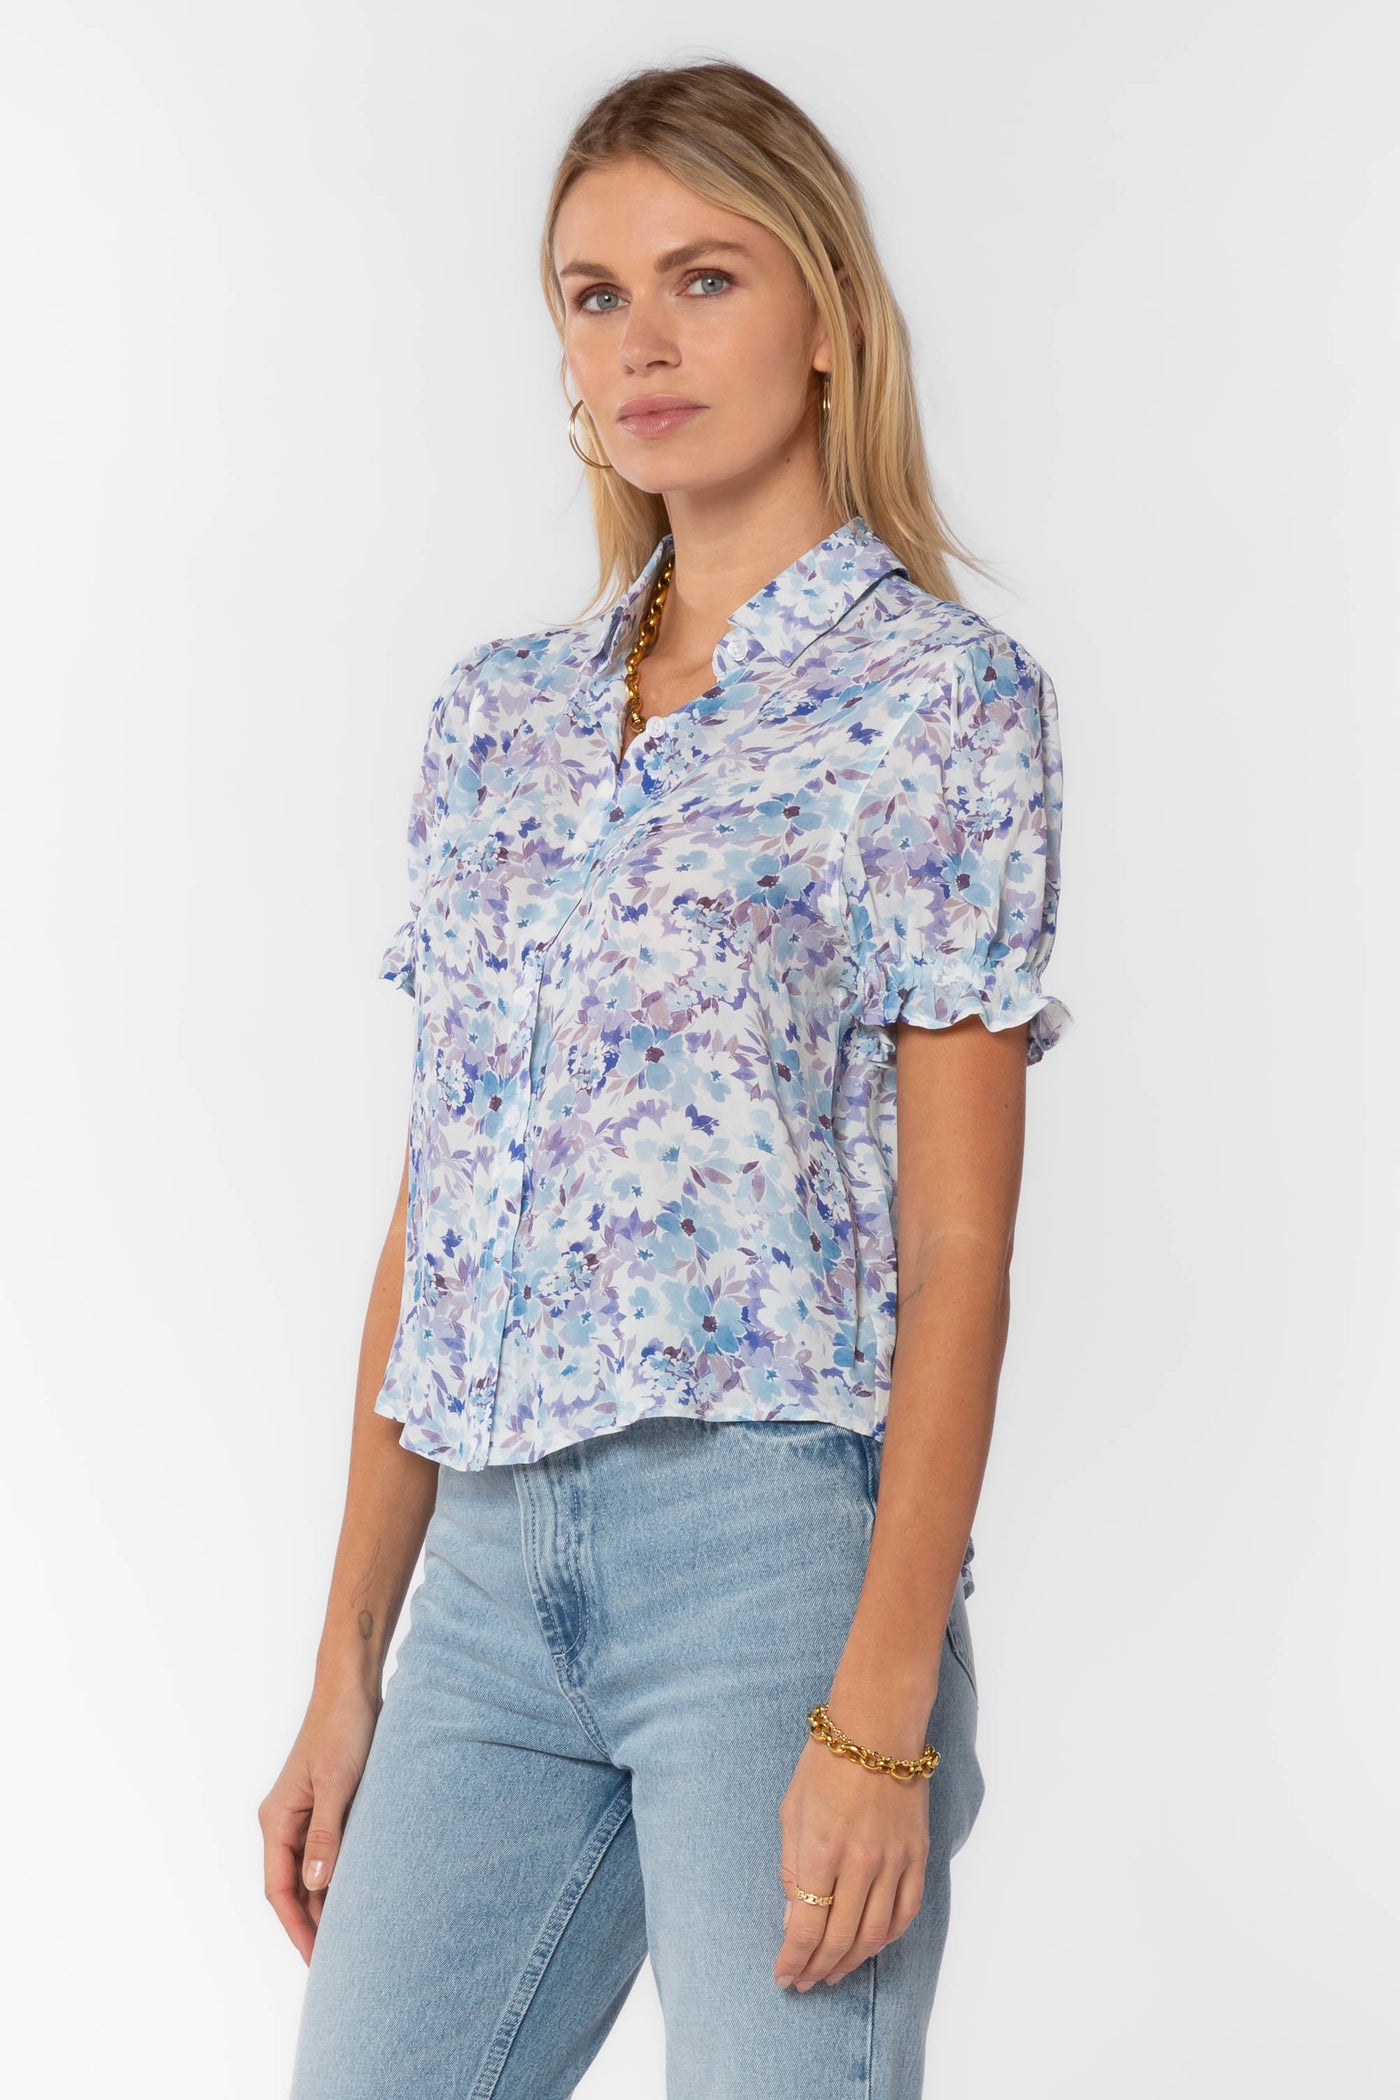 Kitt Blue Floral Shirt - Tops - Velvet Heart Clothing